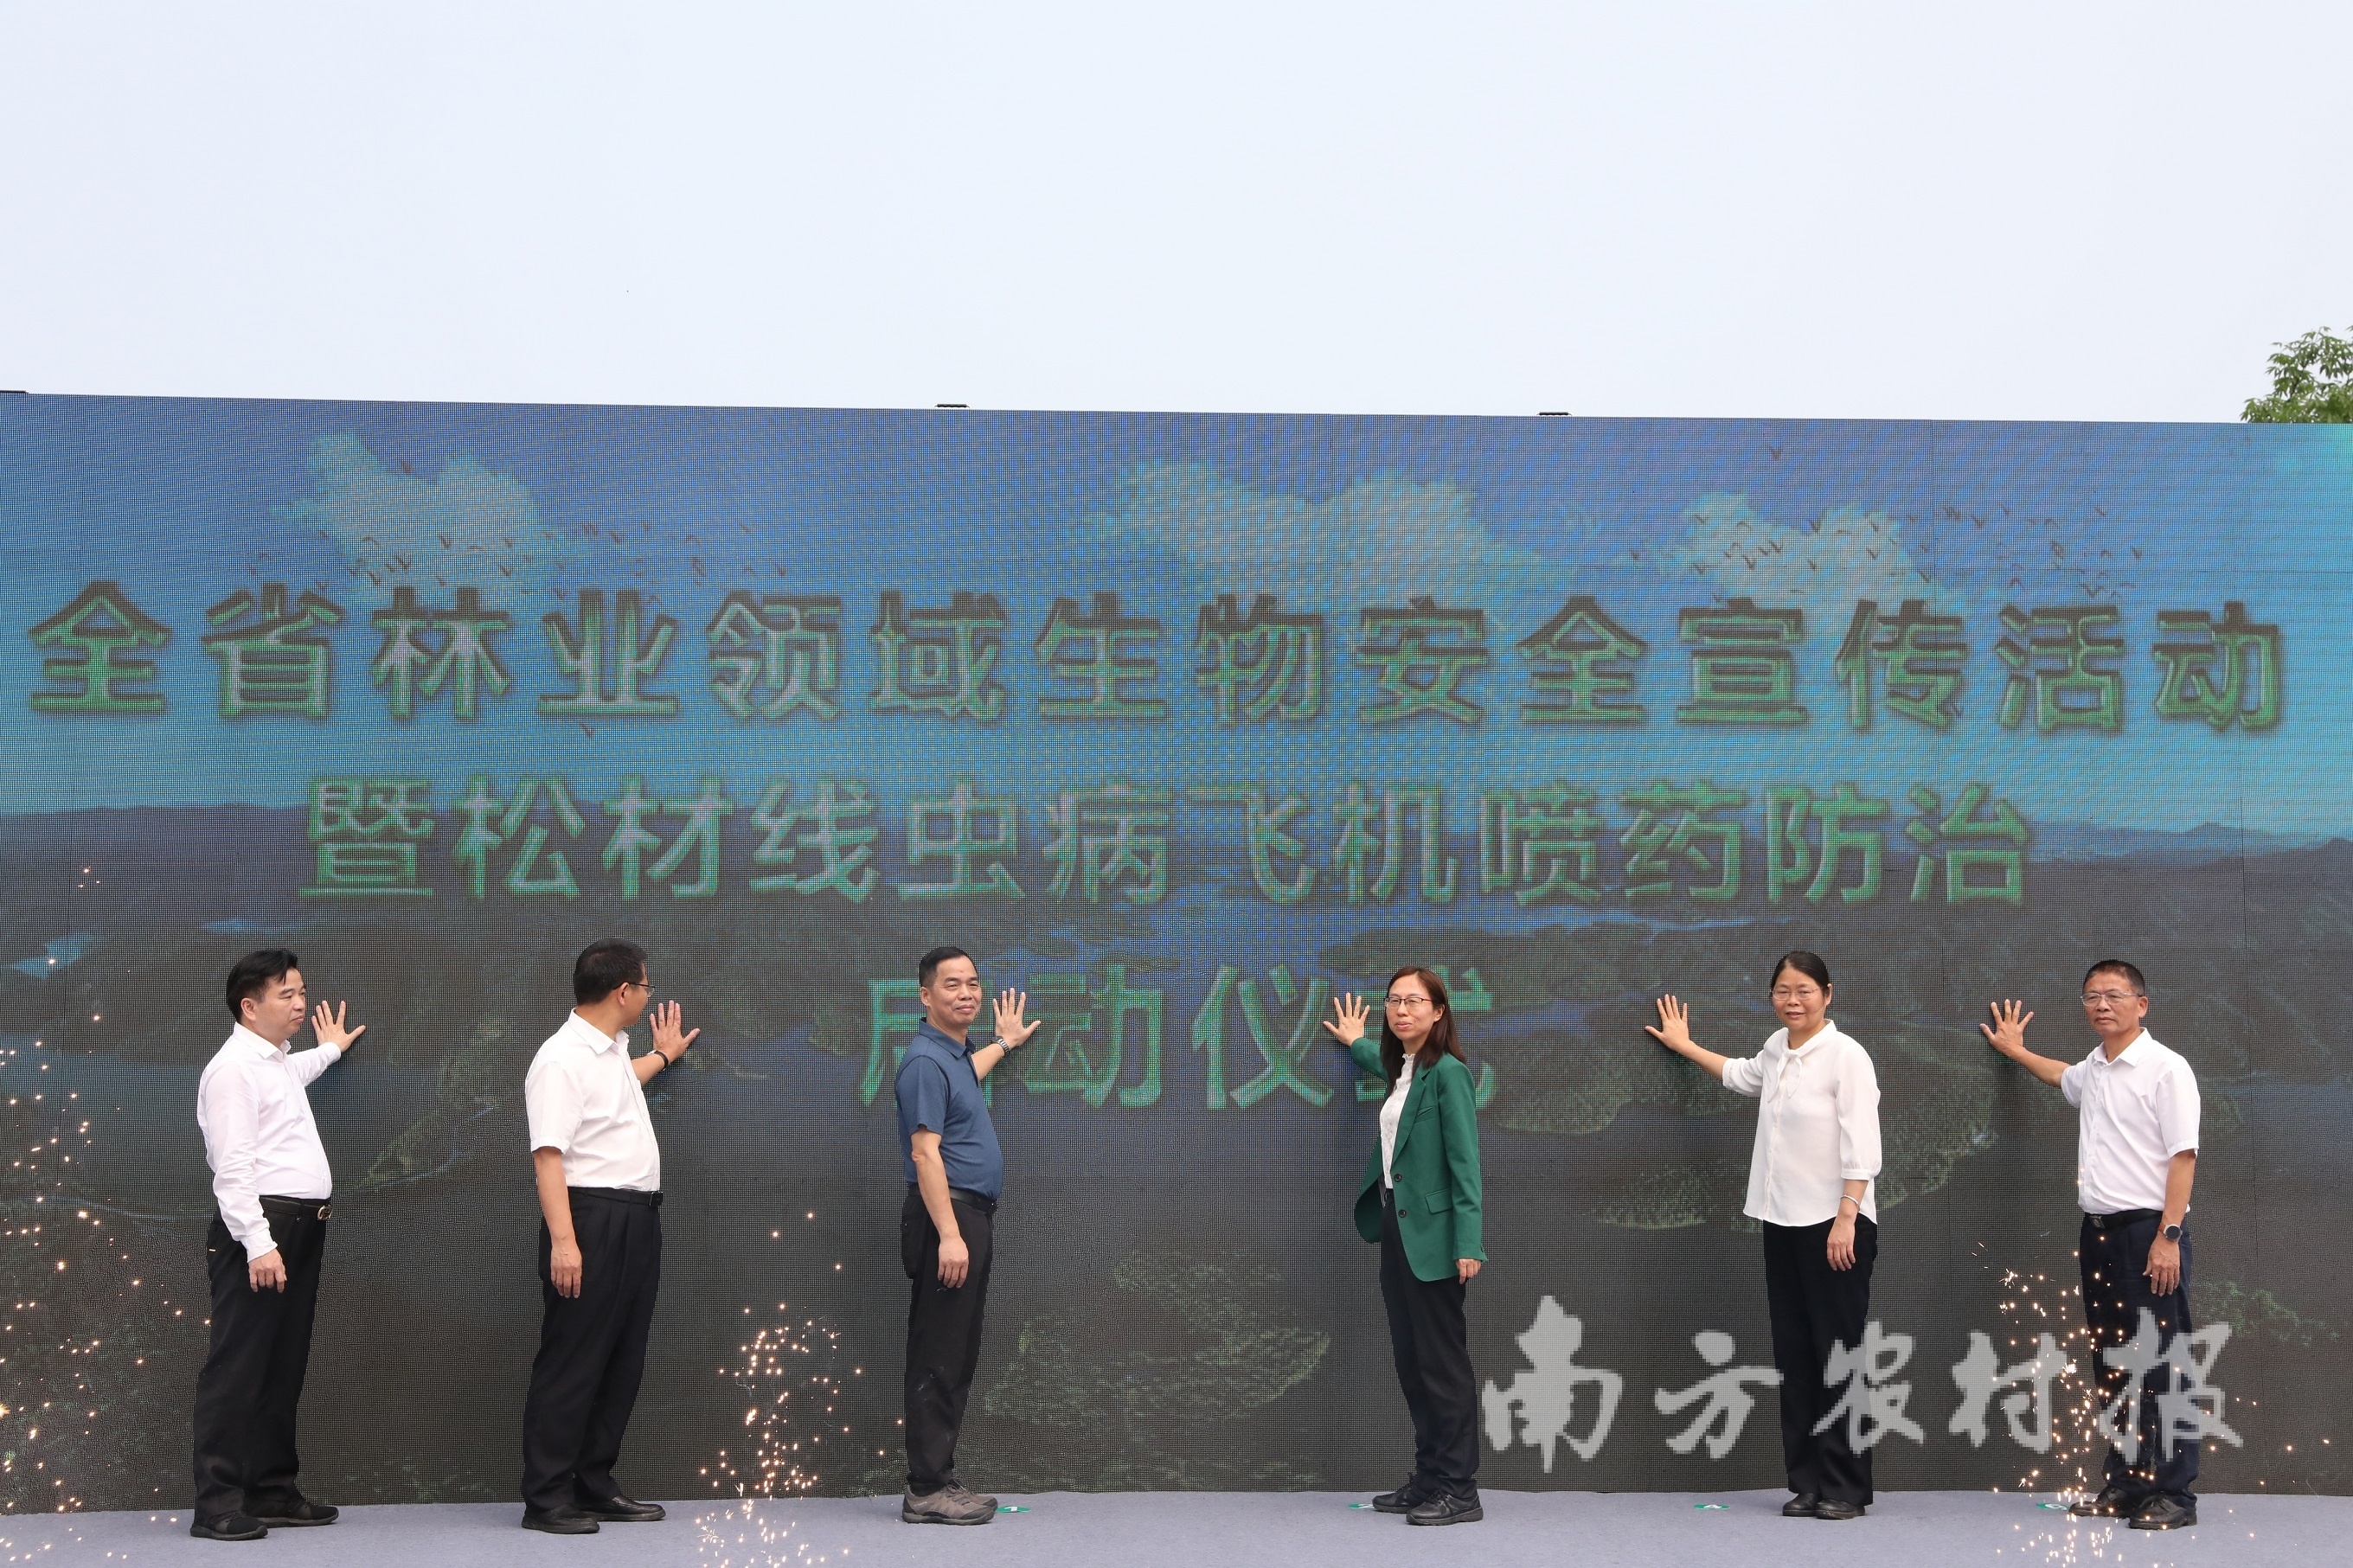 广东省林业领域生物安全宣传活动暨松材线虫病飞机喷药防治启动仪式在河源启动